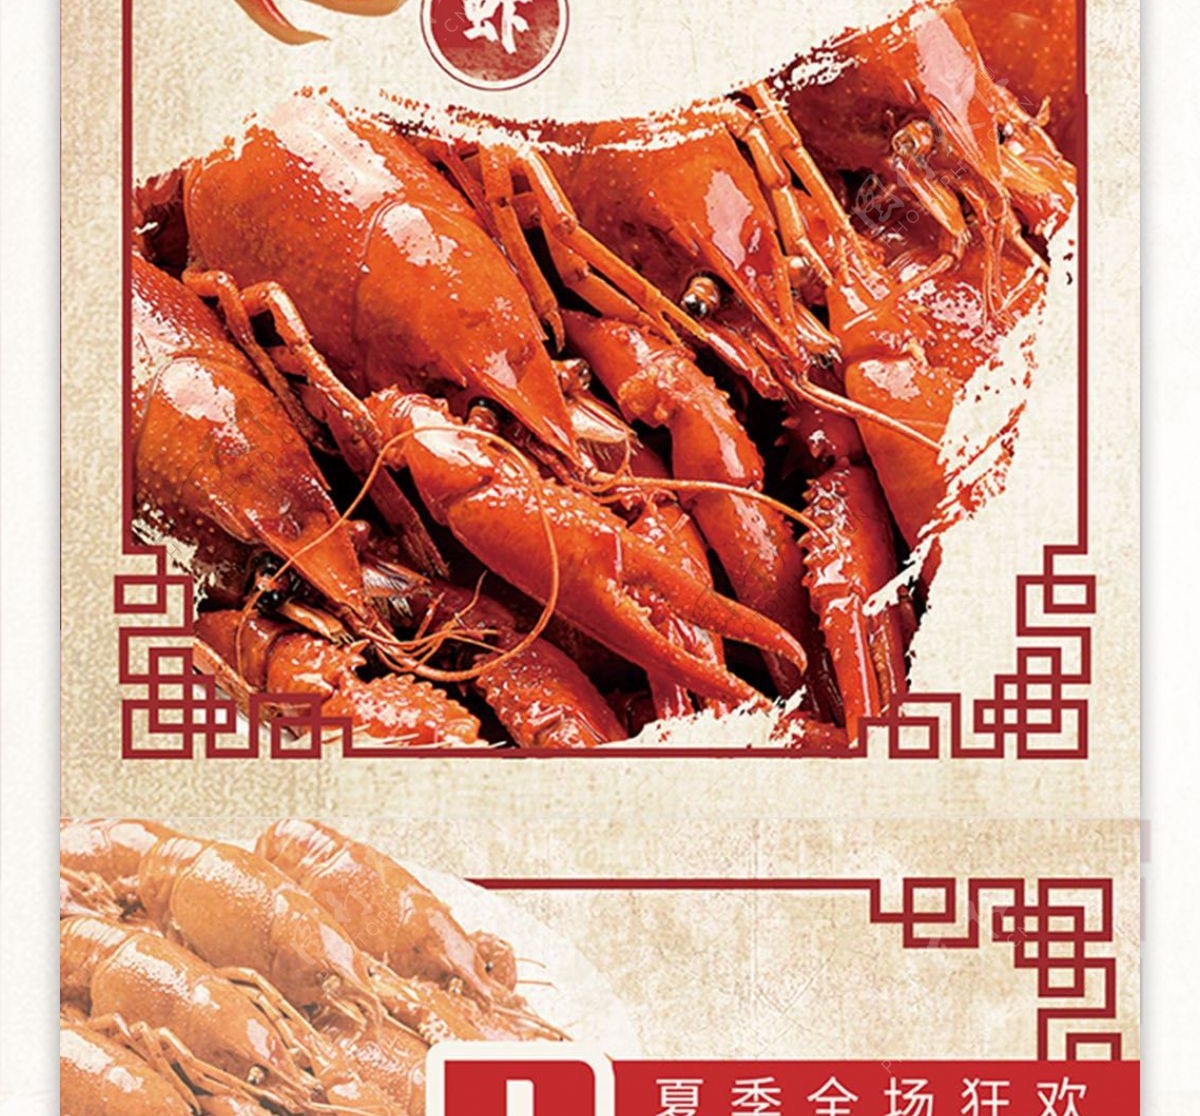 中华美食麻辣小龙虾菜单促销宣传DM单页